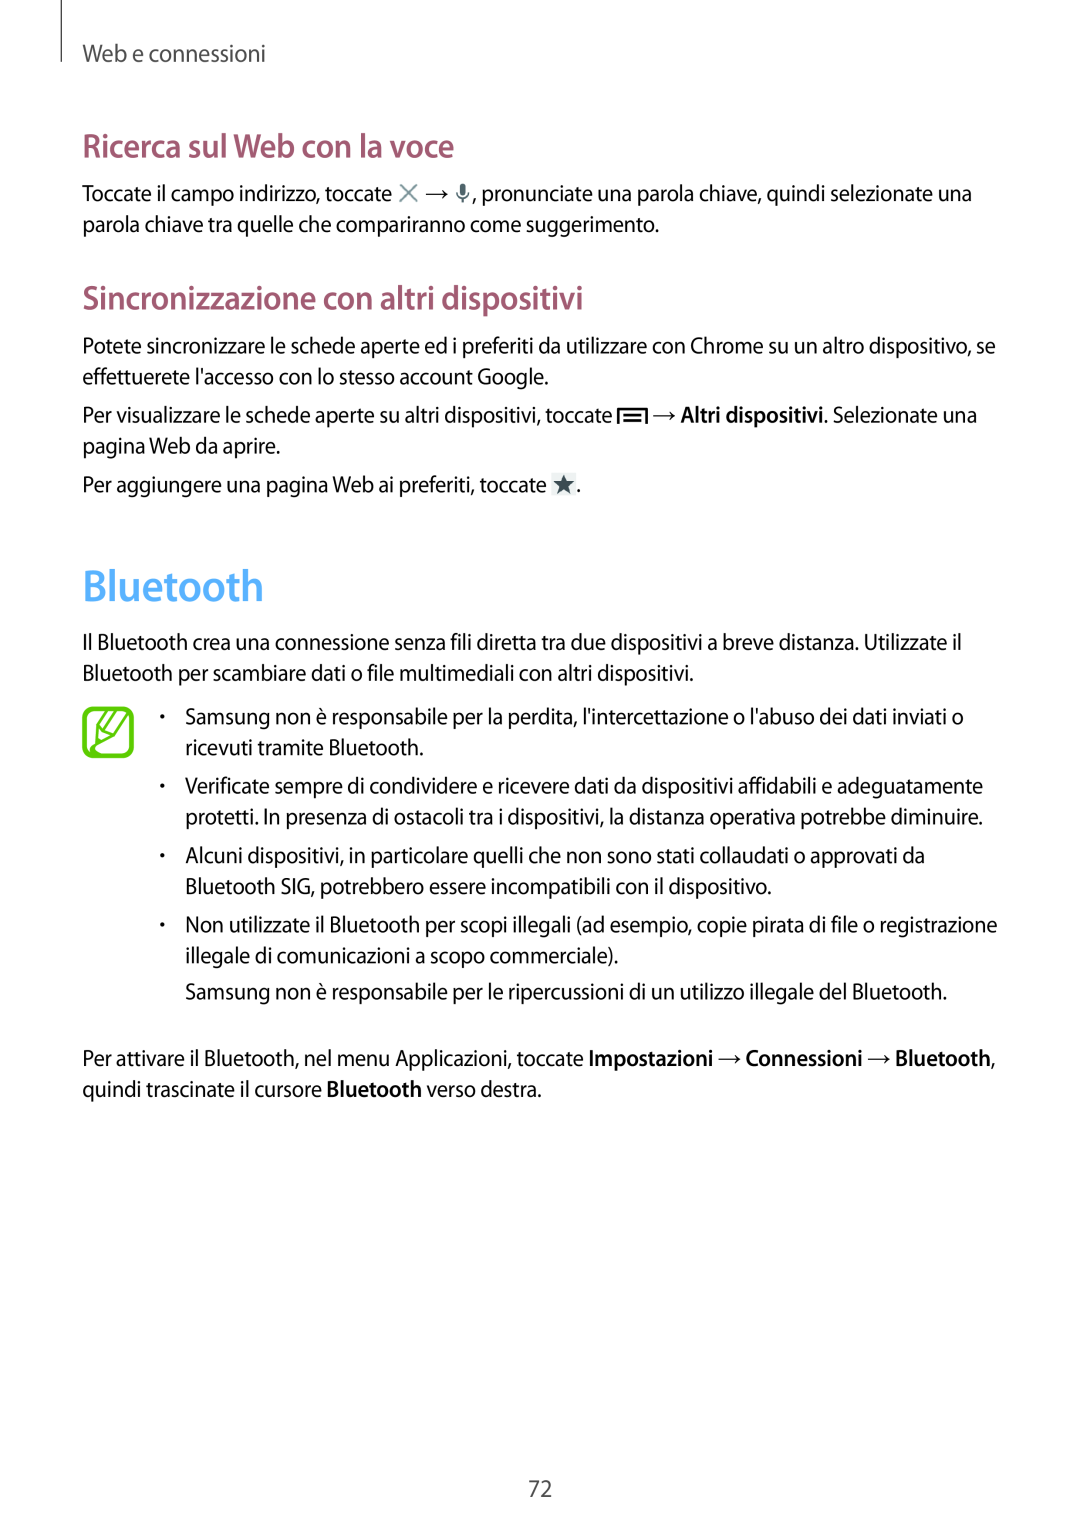 Samsung GT-N7100RWDITV Bluetooth, Sincronizzazione con altri dispositivi, Ricerca sul Web con la voce, Web e connessioni 